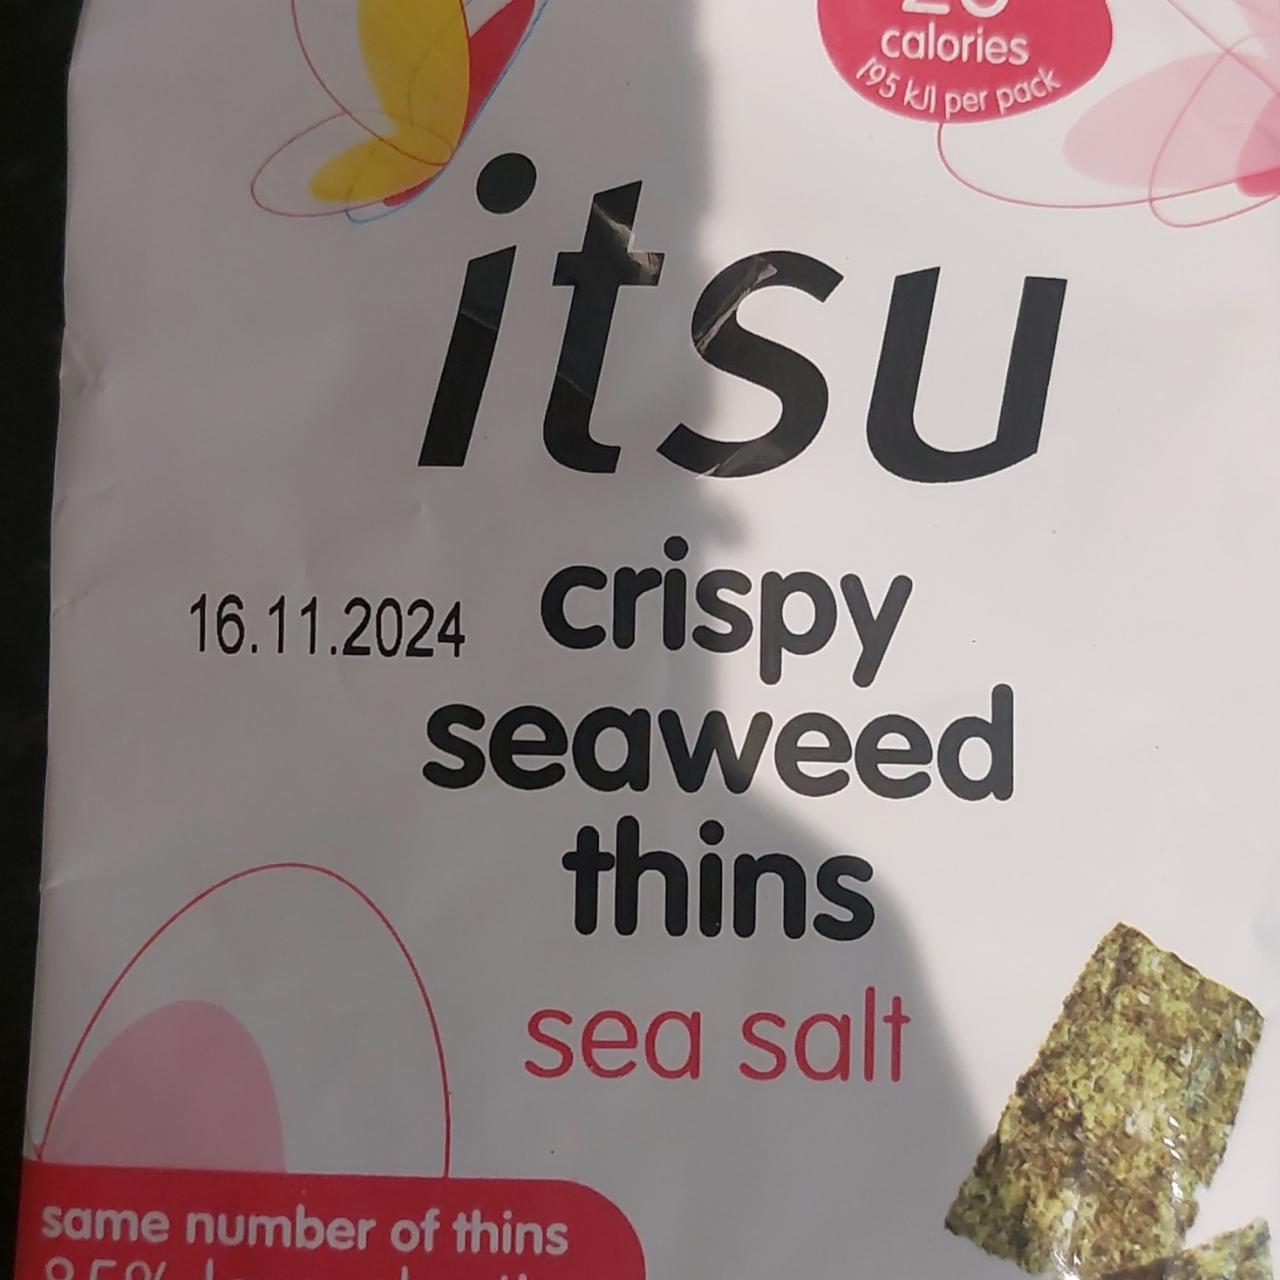 Fotografie - Crispy seaweed thins sea salt itsu